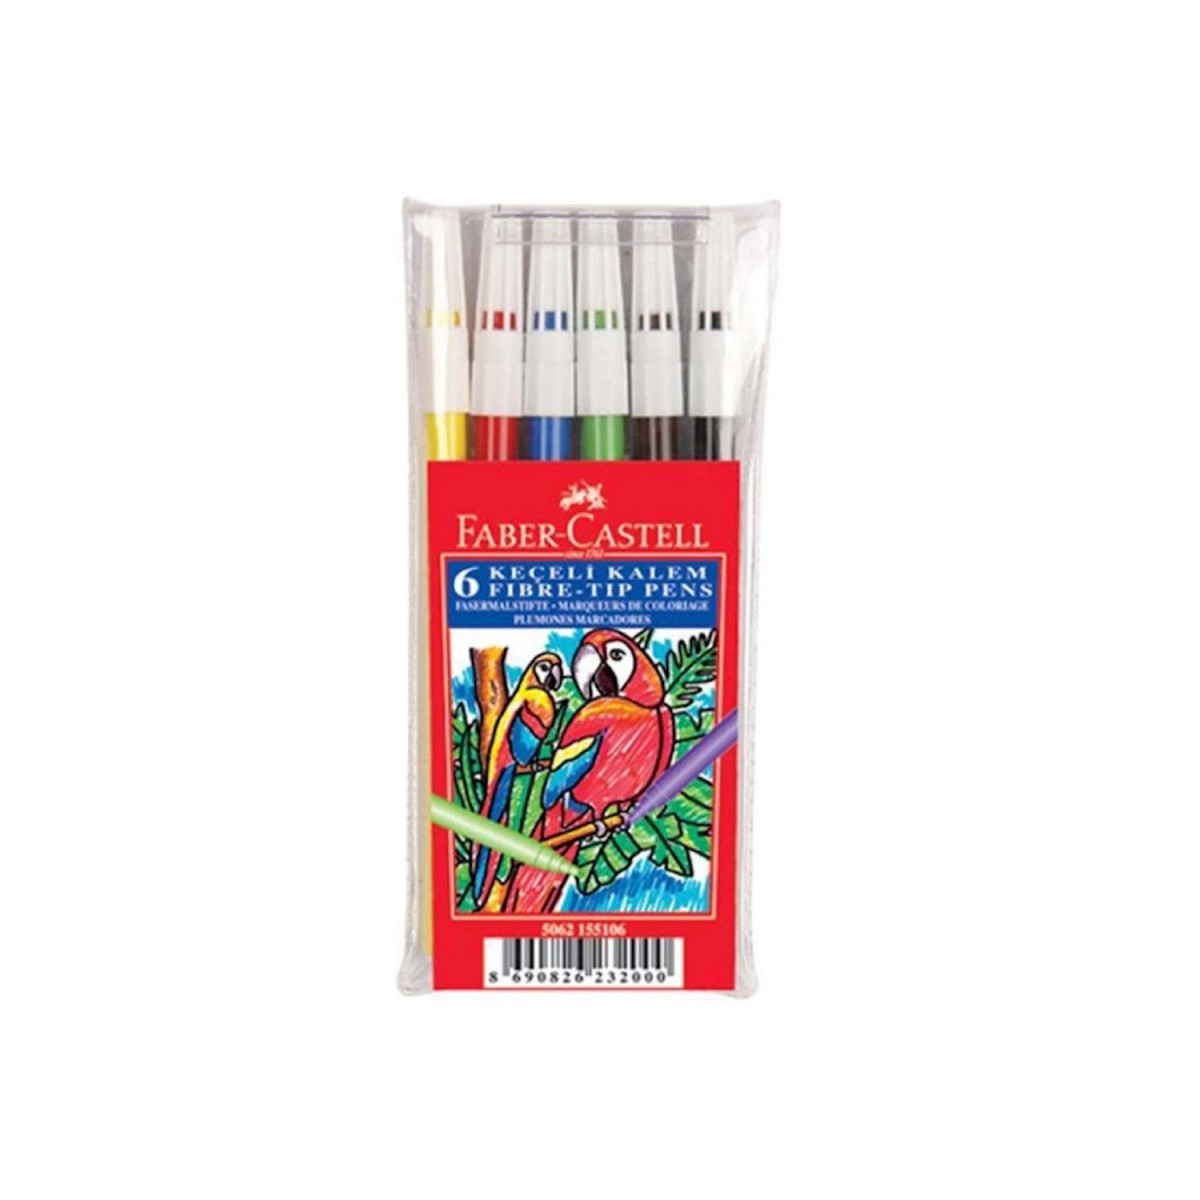 Faber Castell 6 Renk Yıkanabilir Keçeli Kalem